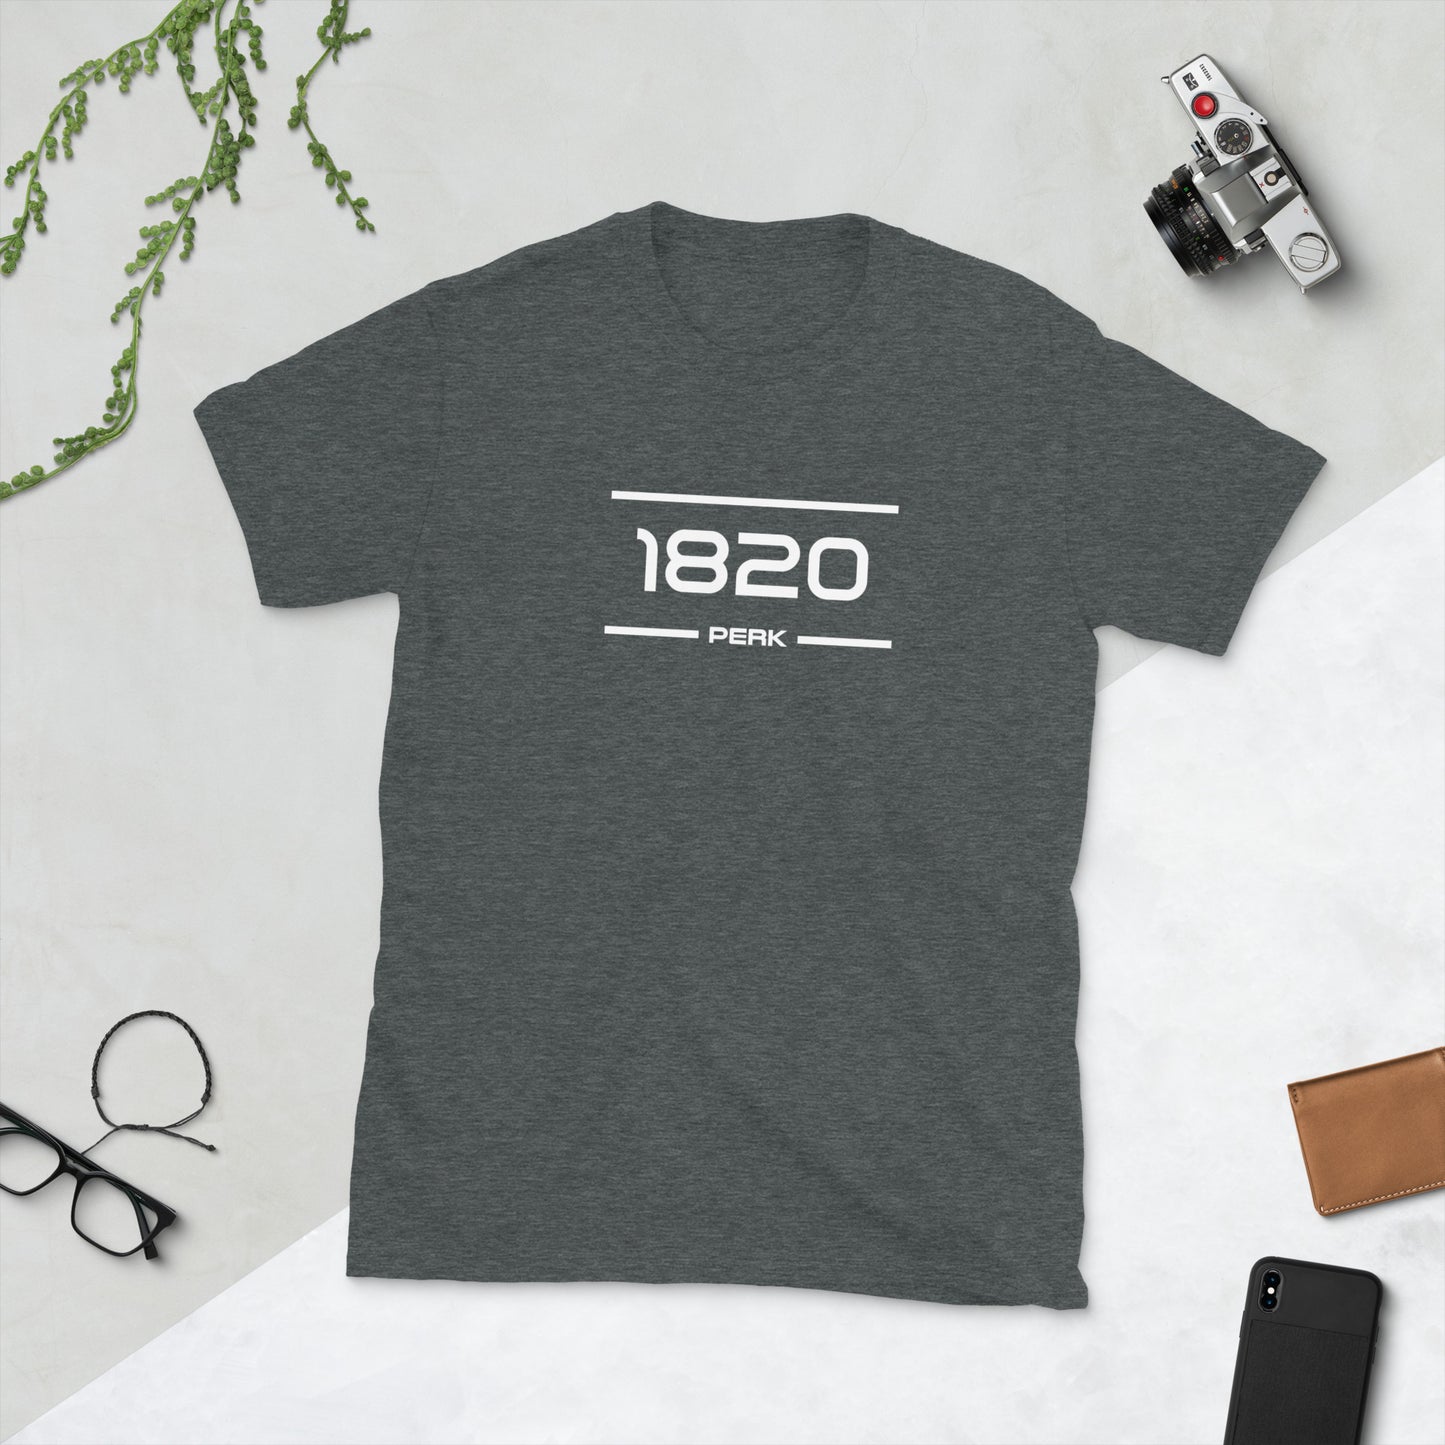 Tshirt - 1820 - Perk